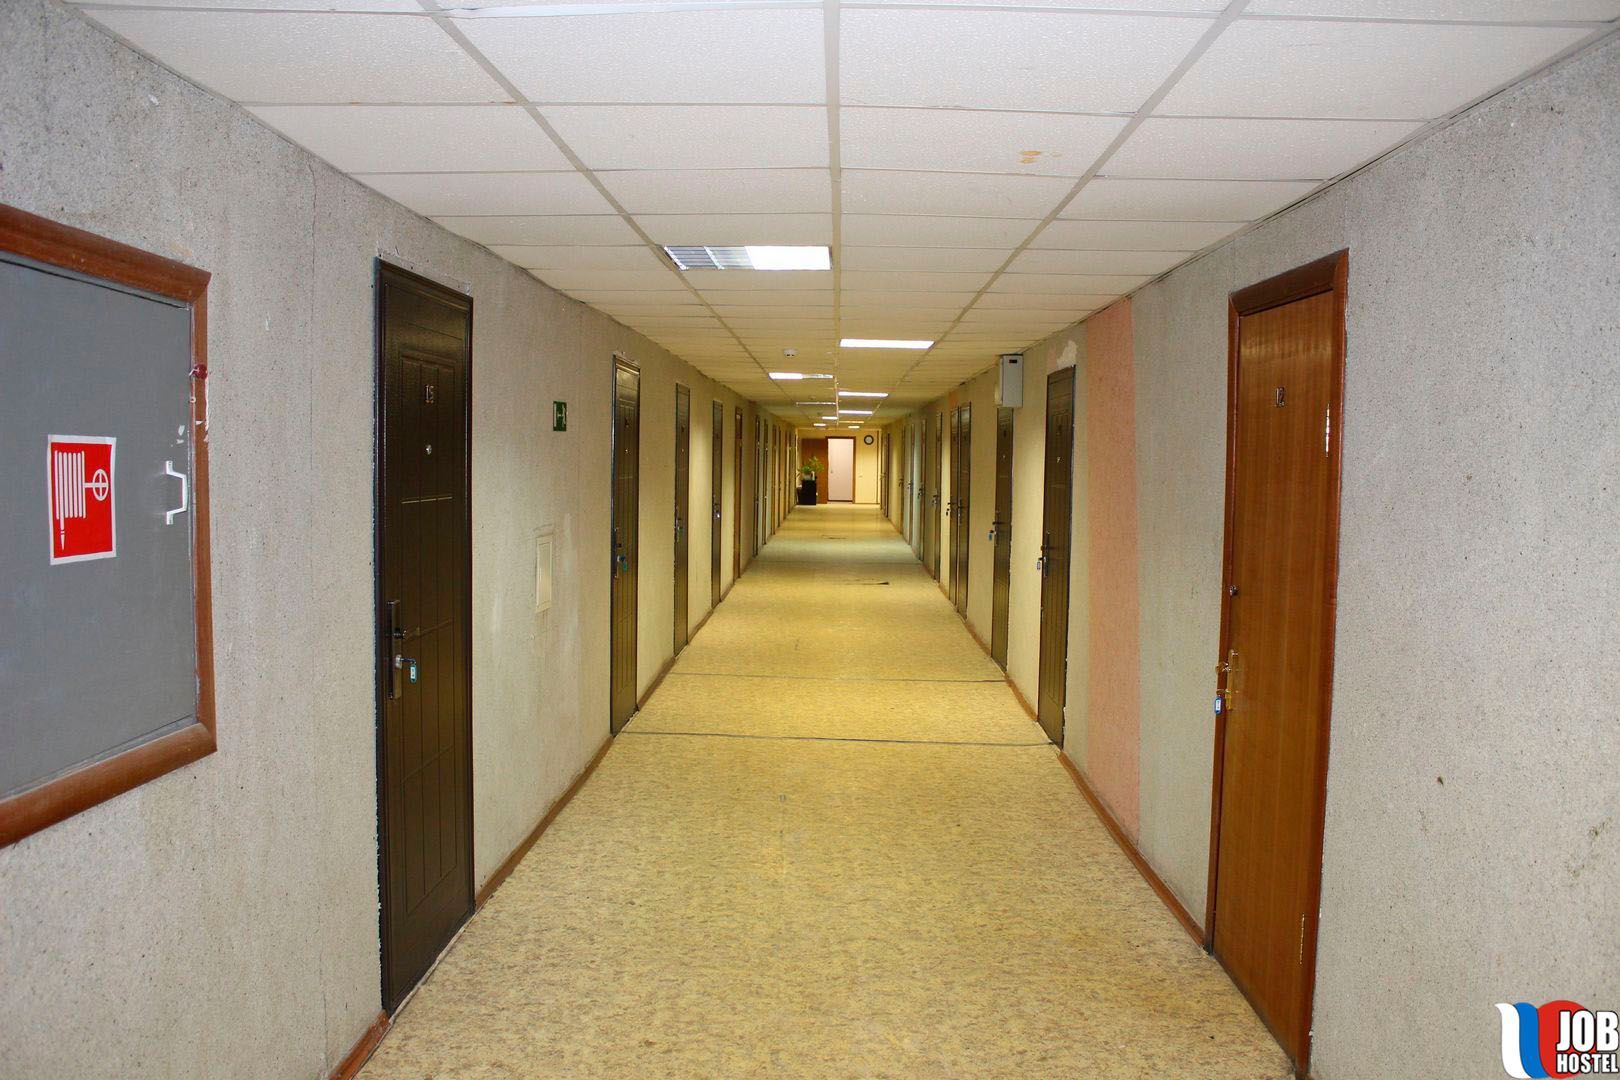 Проходная общежития. Коридор общежития. Коридор студенческого общежития. Комната в общежитии в коридоре. Длинный коридор общежития.